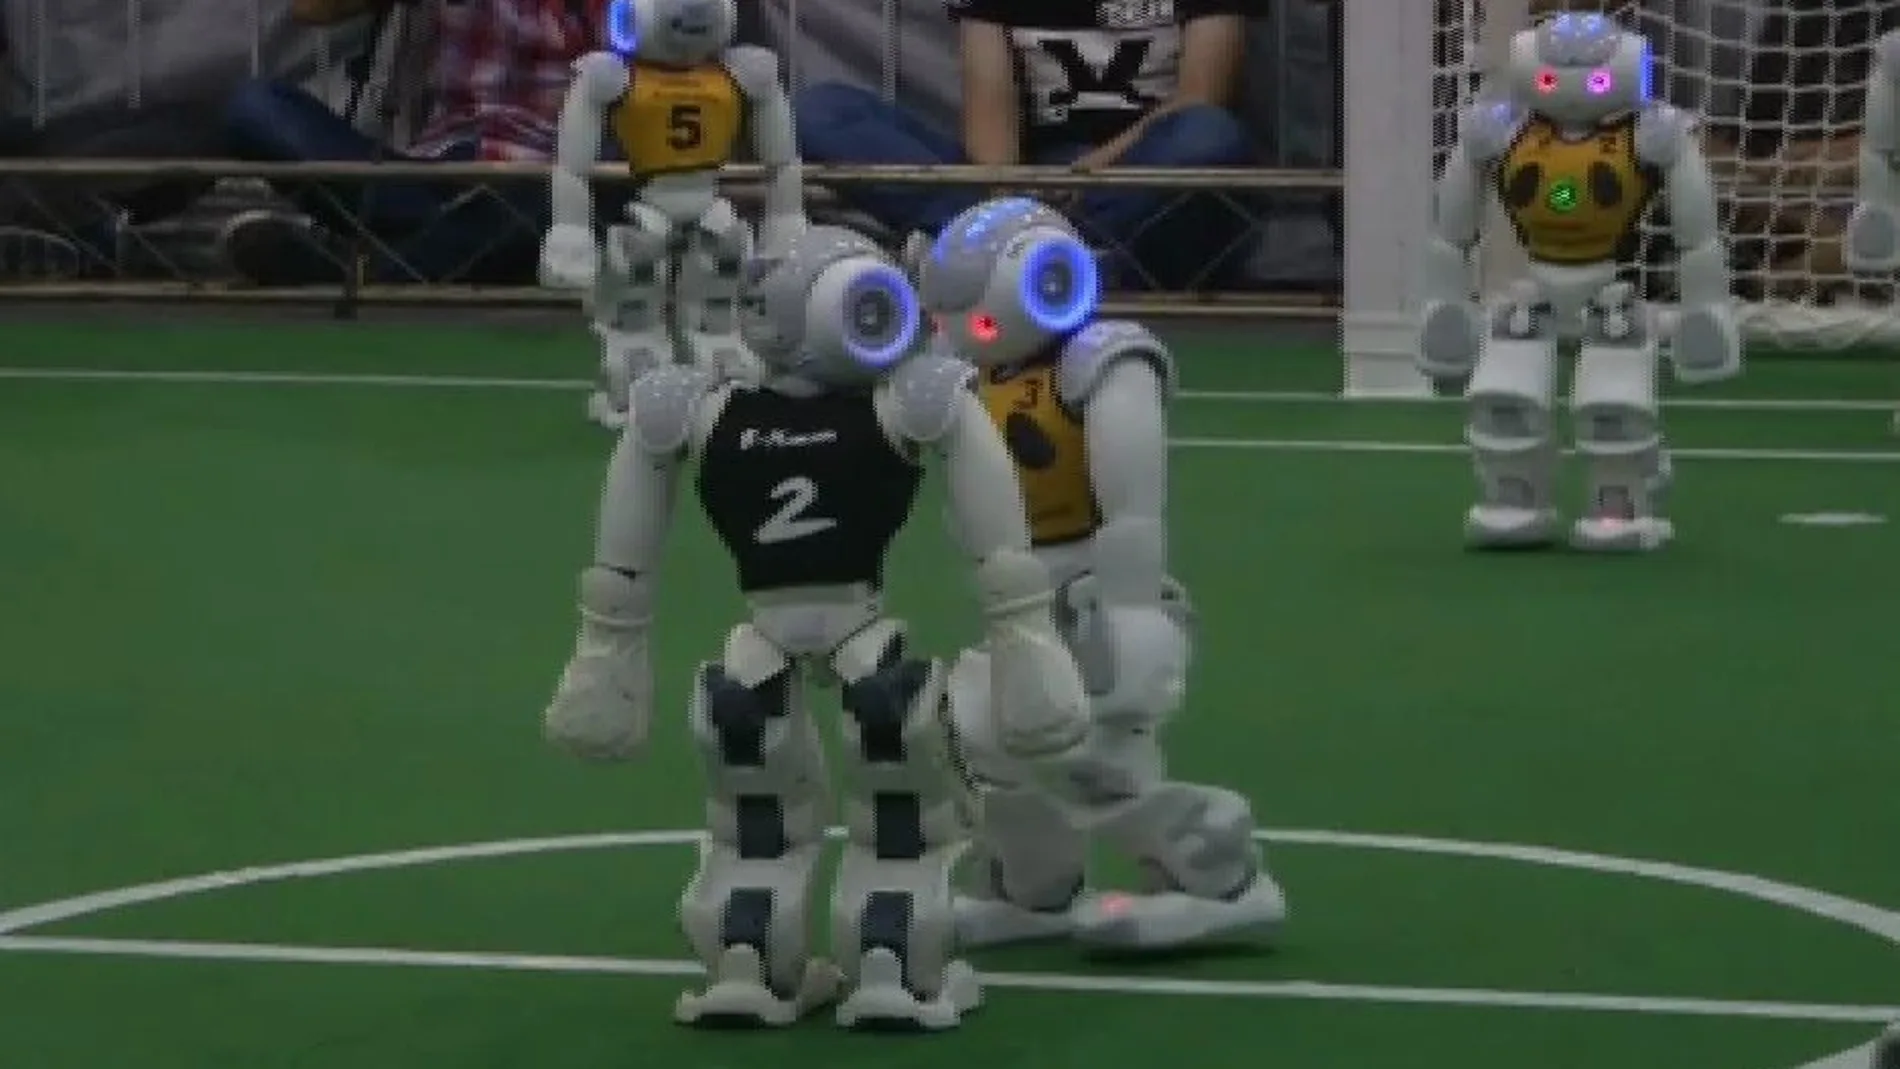 Unos robots son los nuevos campeones del mundo de fútbol